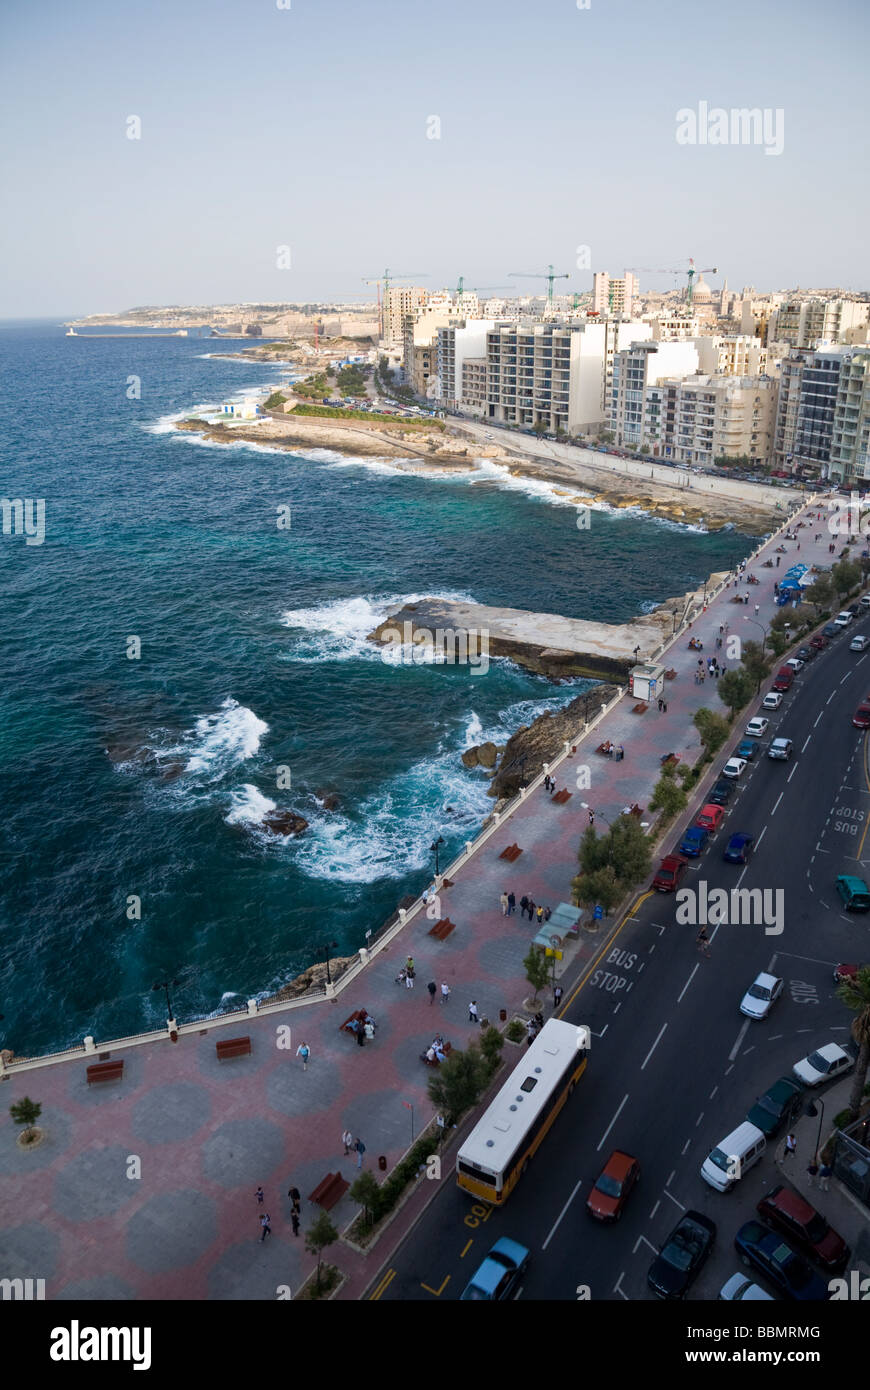 The coastline at Sliema in Malta, EU. Stock Photo